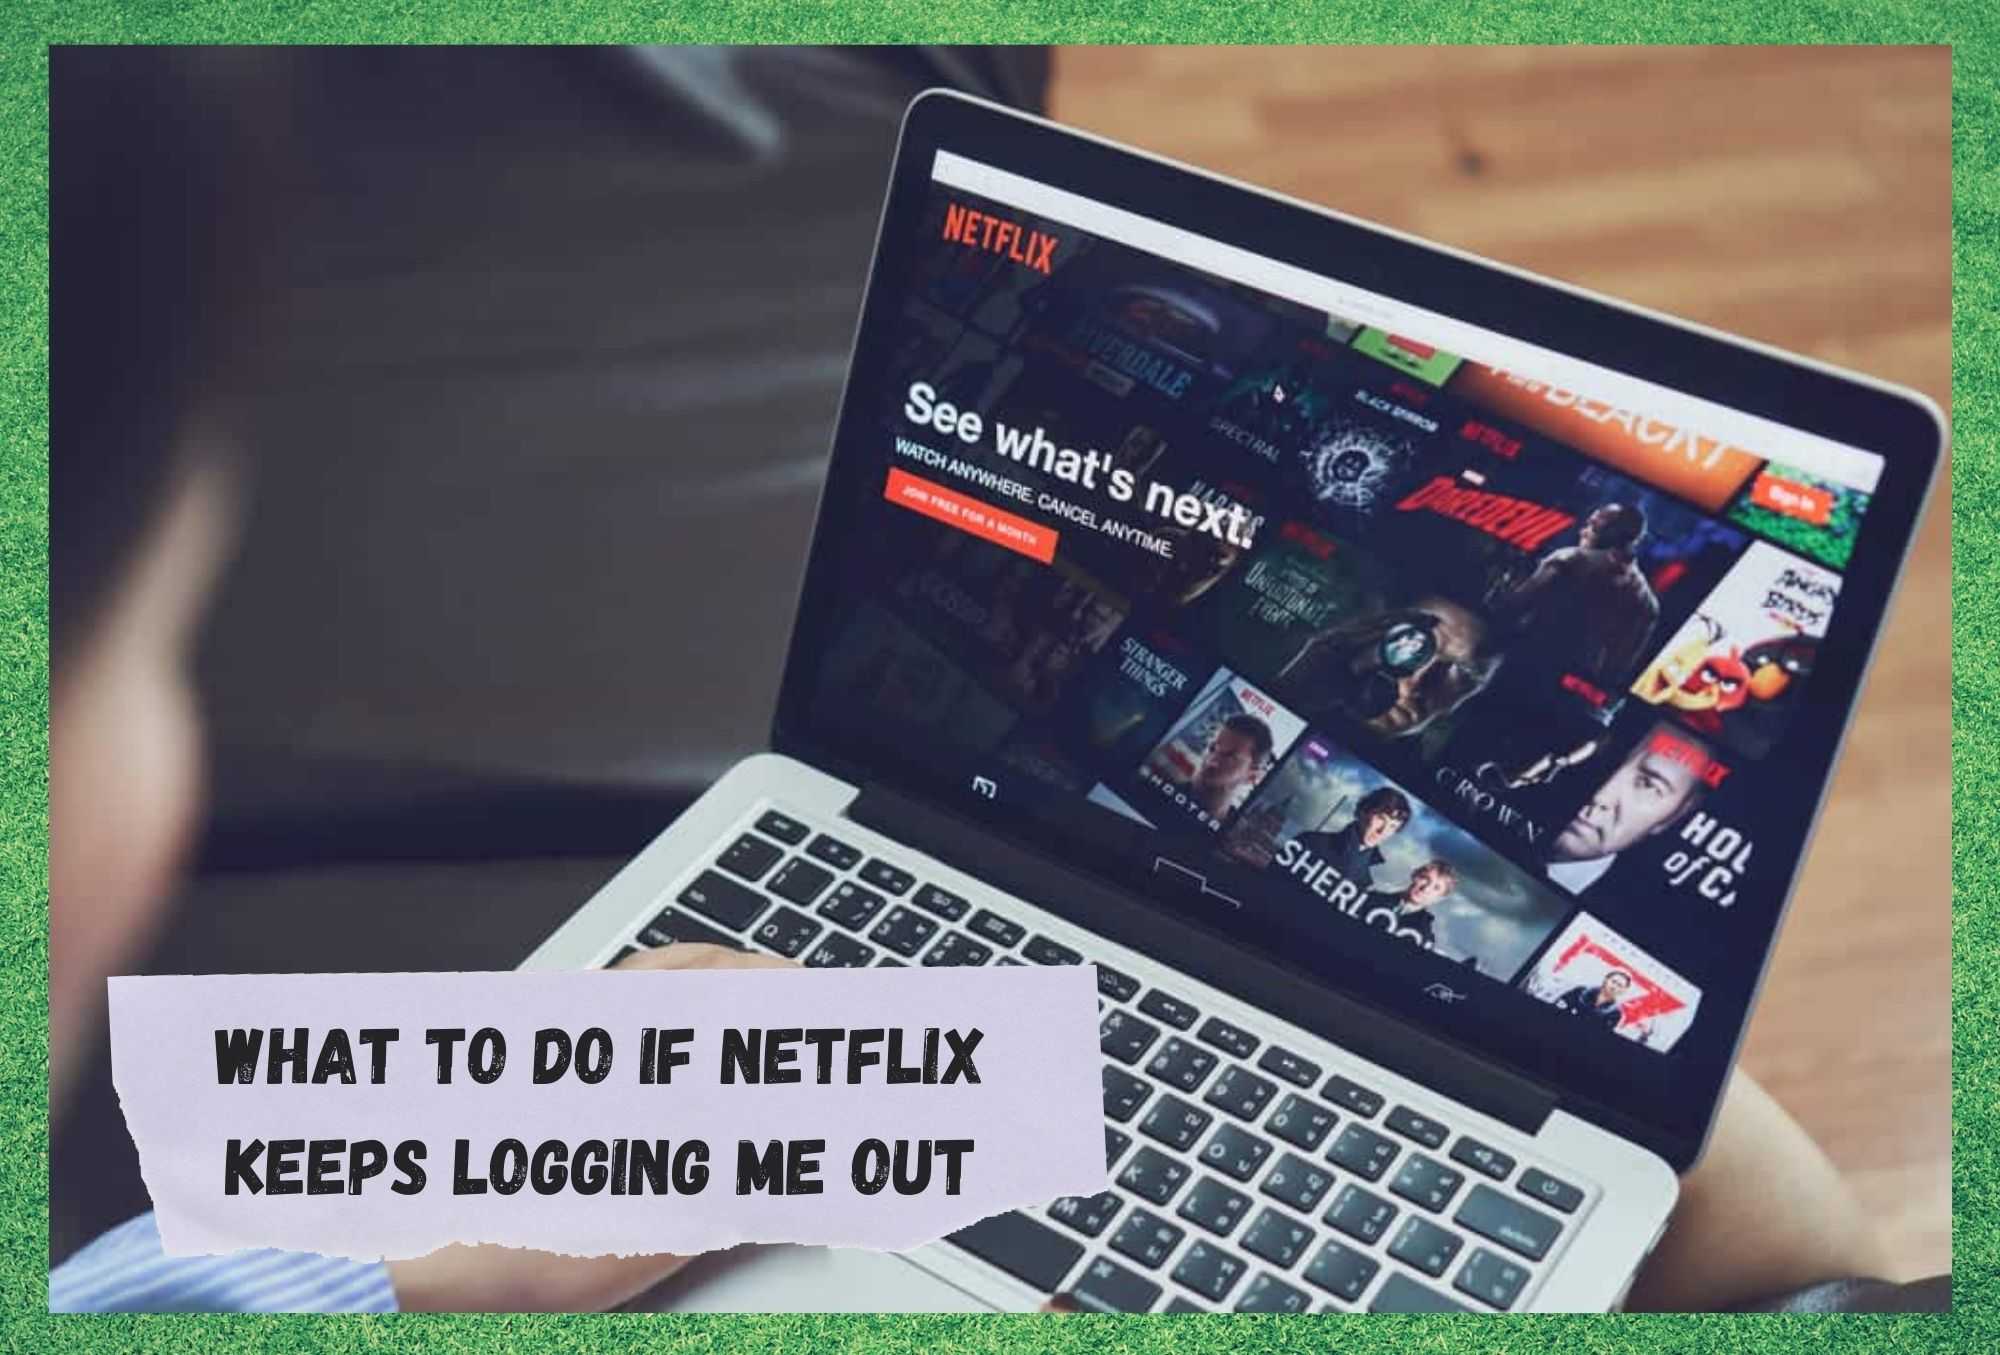 Netflix continuă să mă deconecteze: 4 moduri de remediere